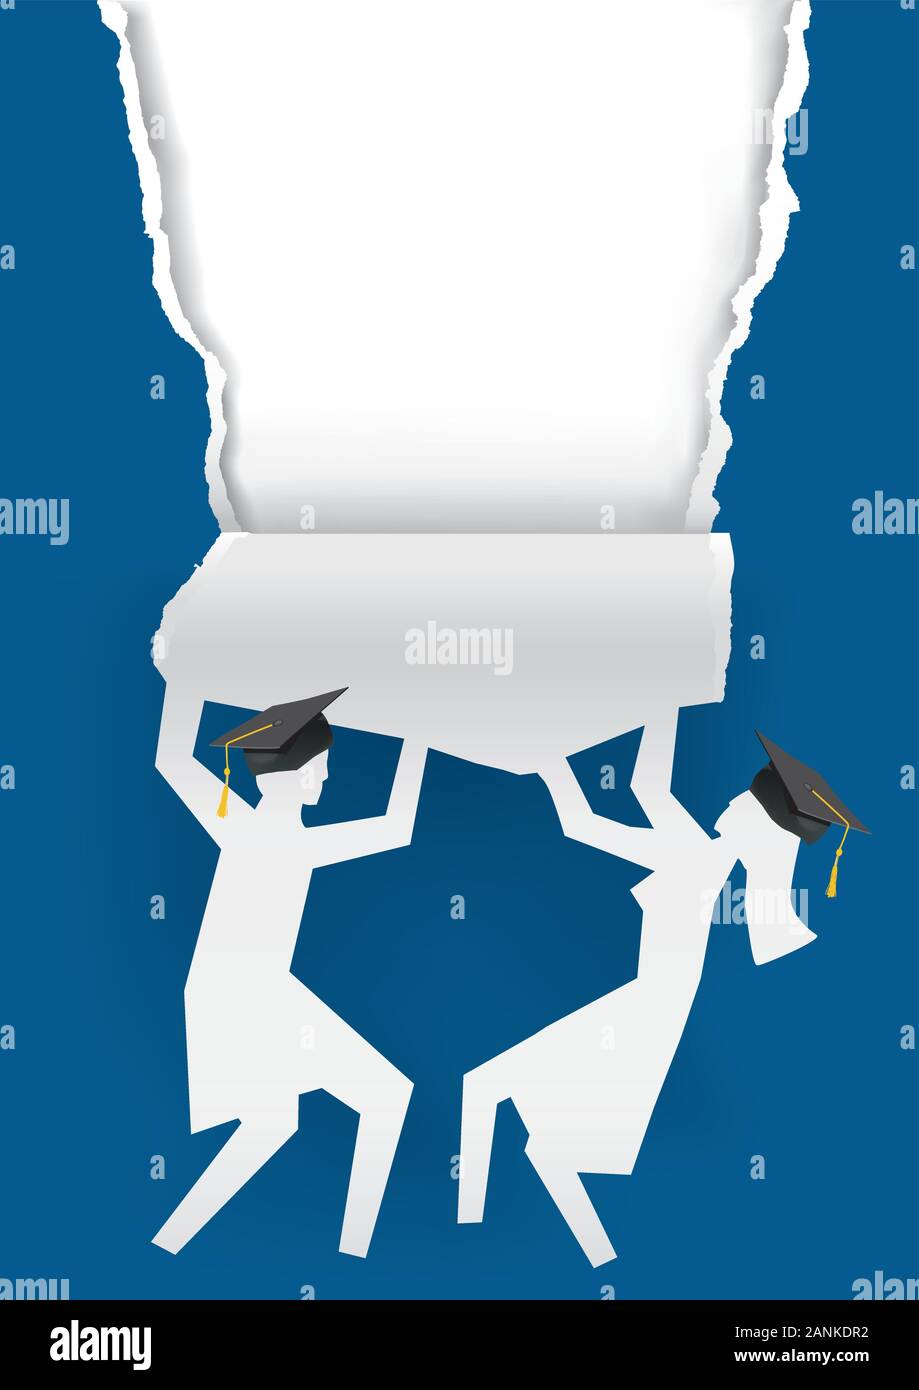 Ragazza amd ragazzo laureati, strappato sfondo di carta blu. Illustrazione di due sagome di carta degli studenti con carta strappata per cartellone. Vettore disponibile. Illustrazione Vettoriale